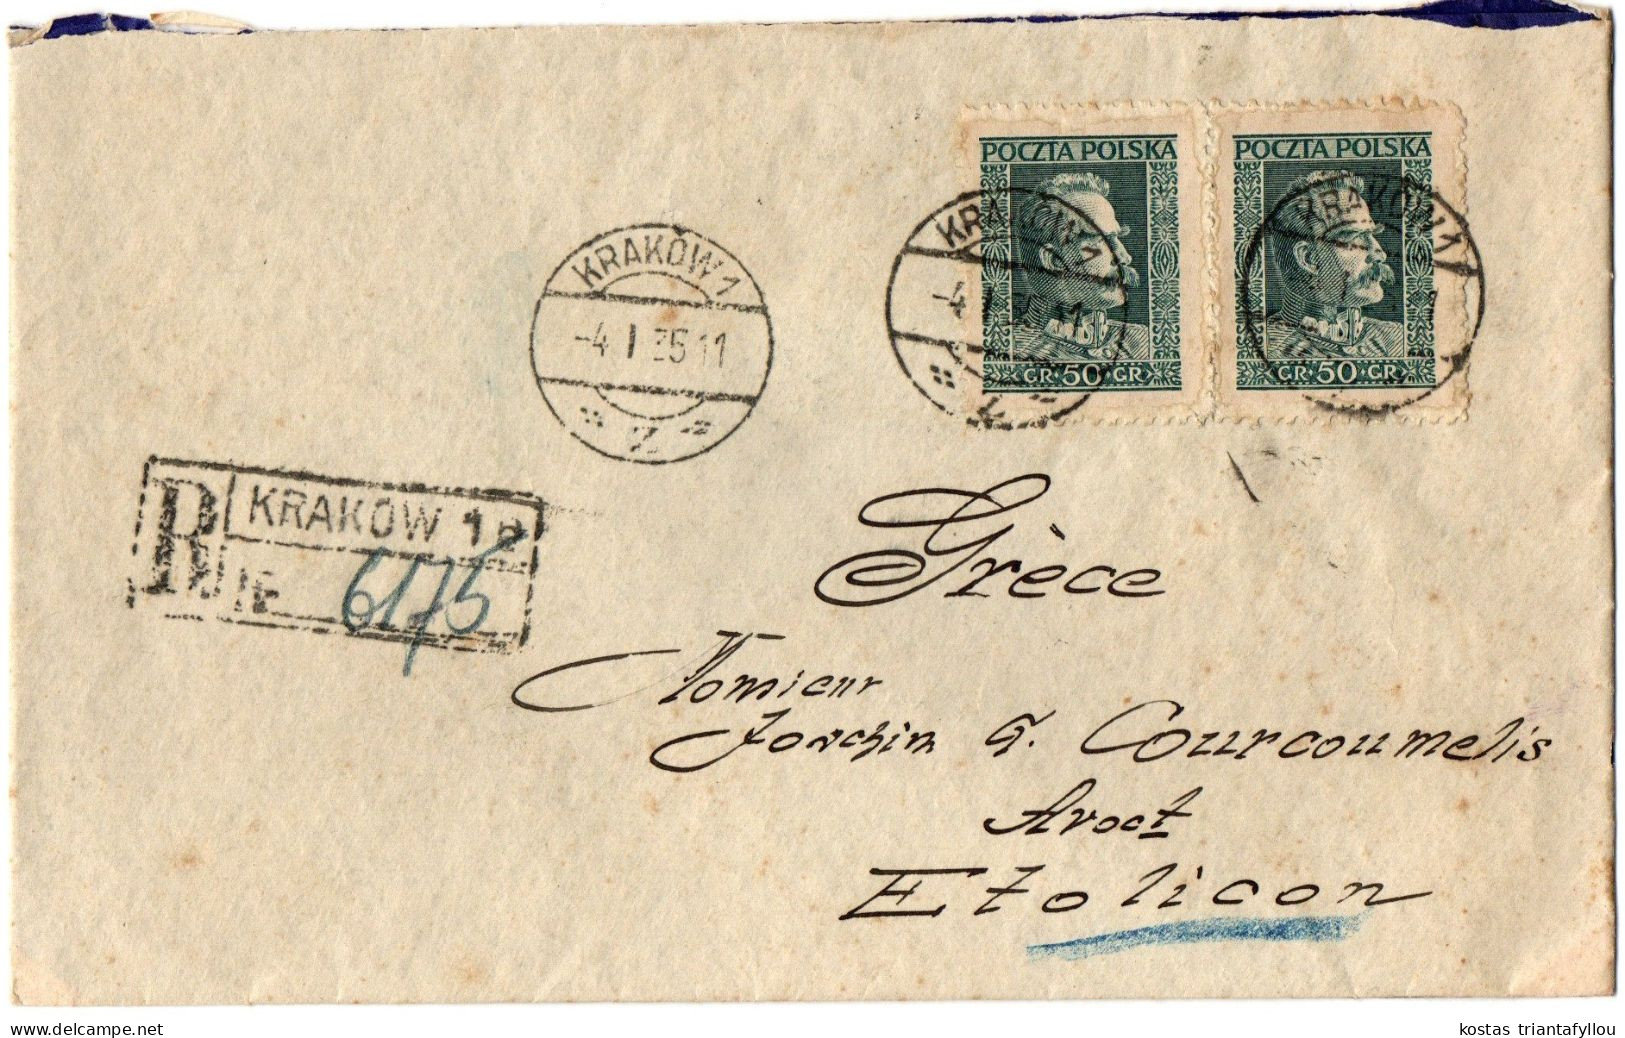 1, 3 POLAND, 1935, COVER TO GREECE - Briefe U. Dokumente